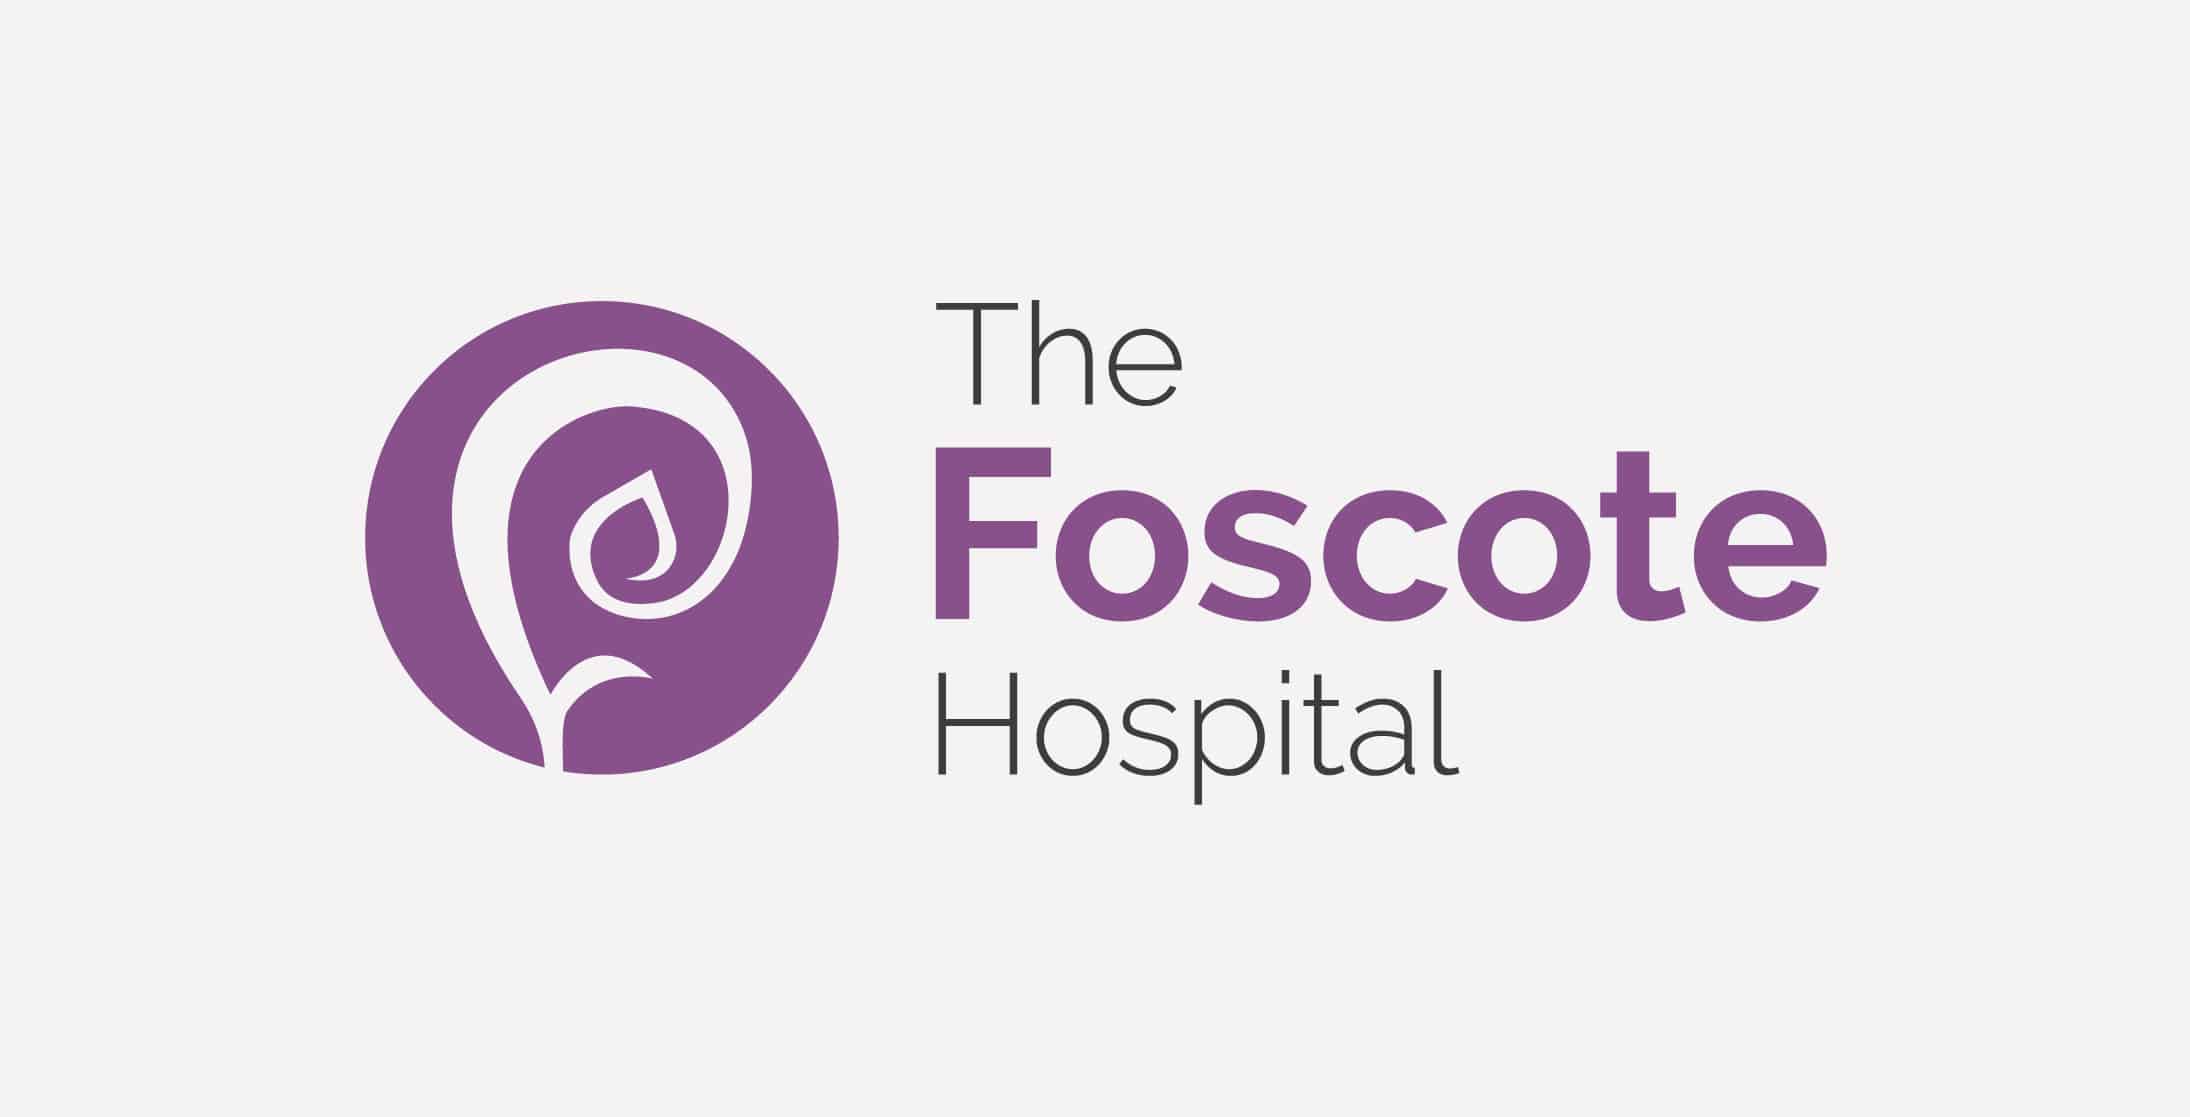 Foscote Hospital Logo